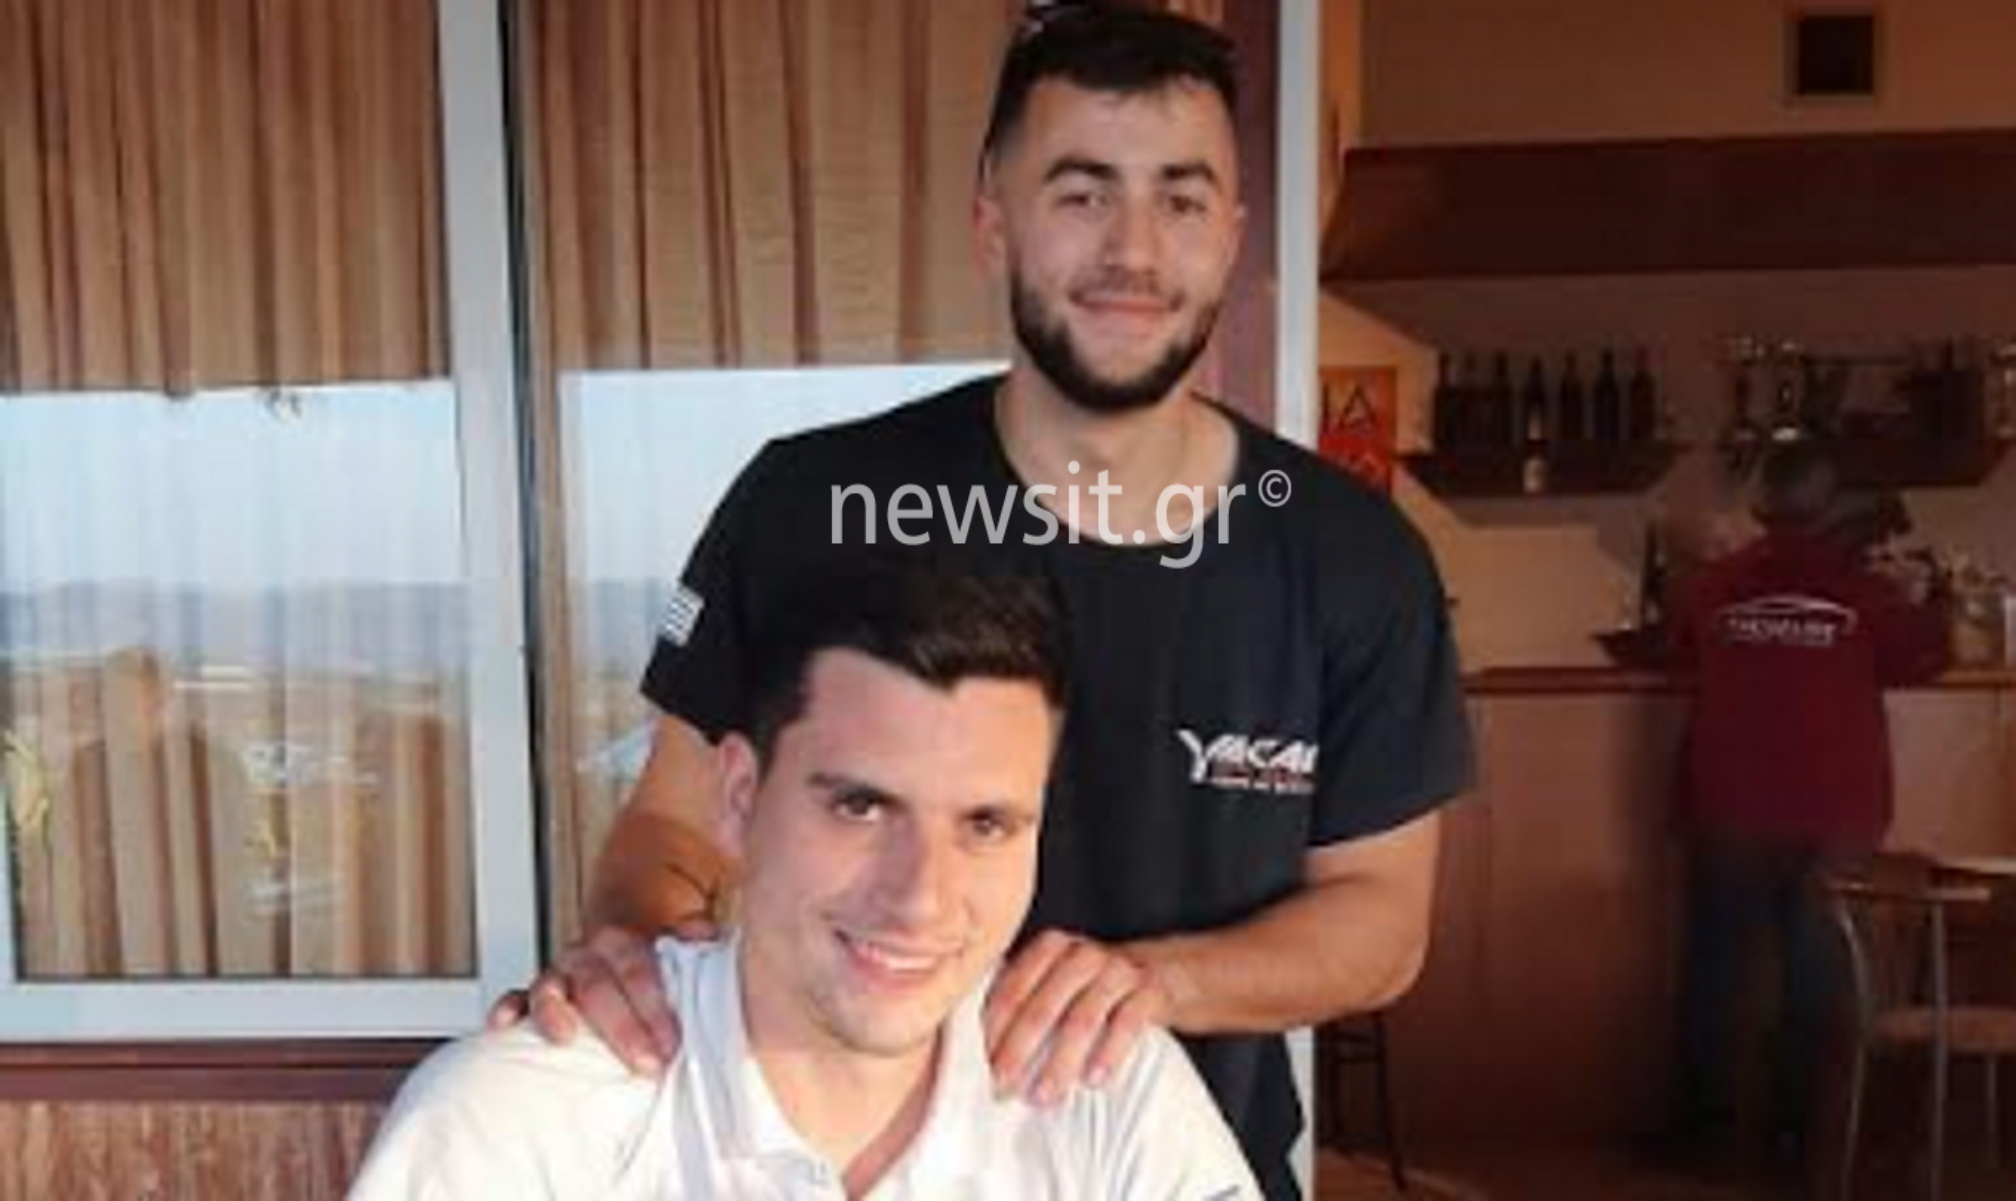 Τροχαίο Νέα Ιωνία: Σοκαρισμένος φίλος του 19χρονου Κωνσταντίνου Τακιδέλλη – «Πάντα στις καρδιές μας ο πρωταθλητής»